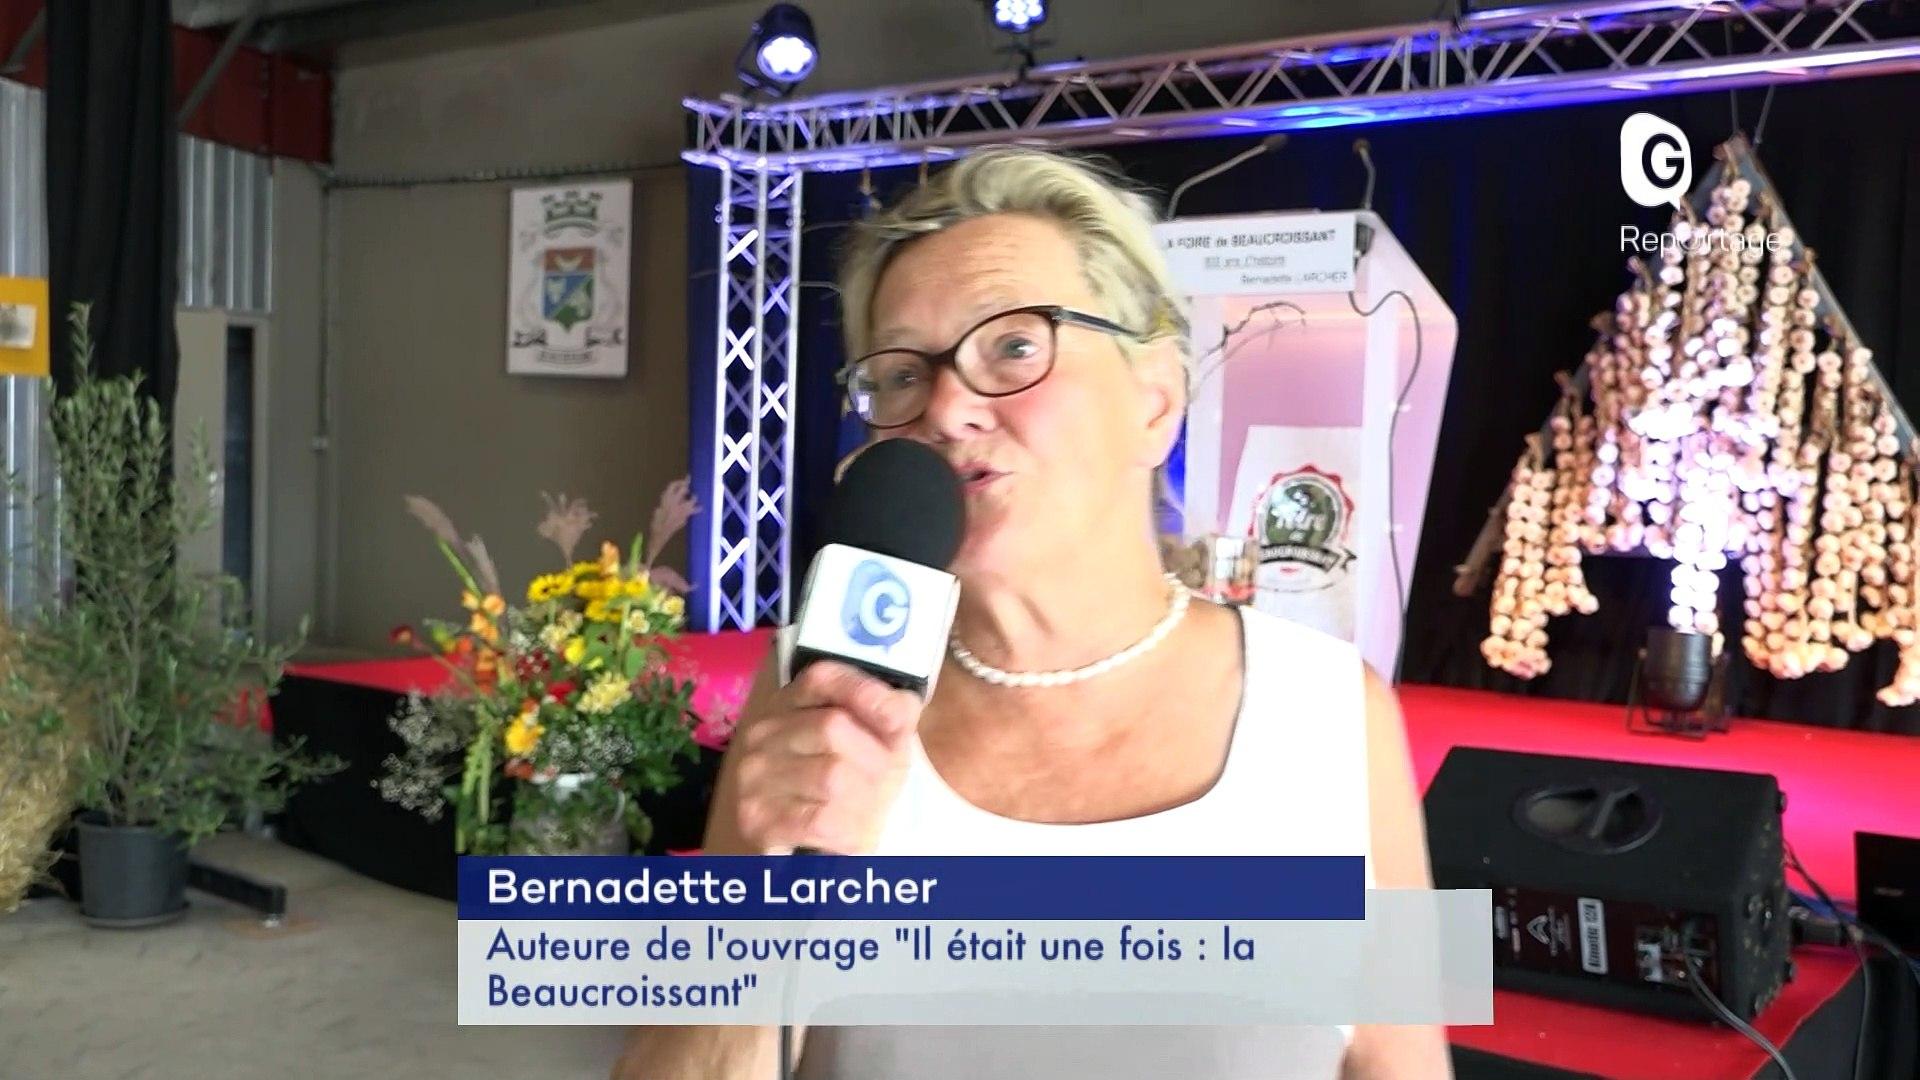 Bernadette larcher